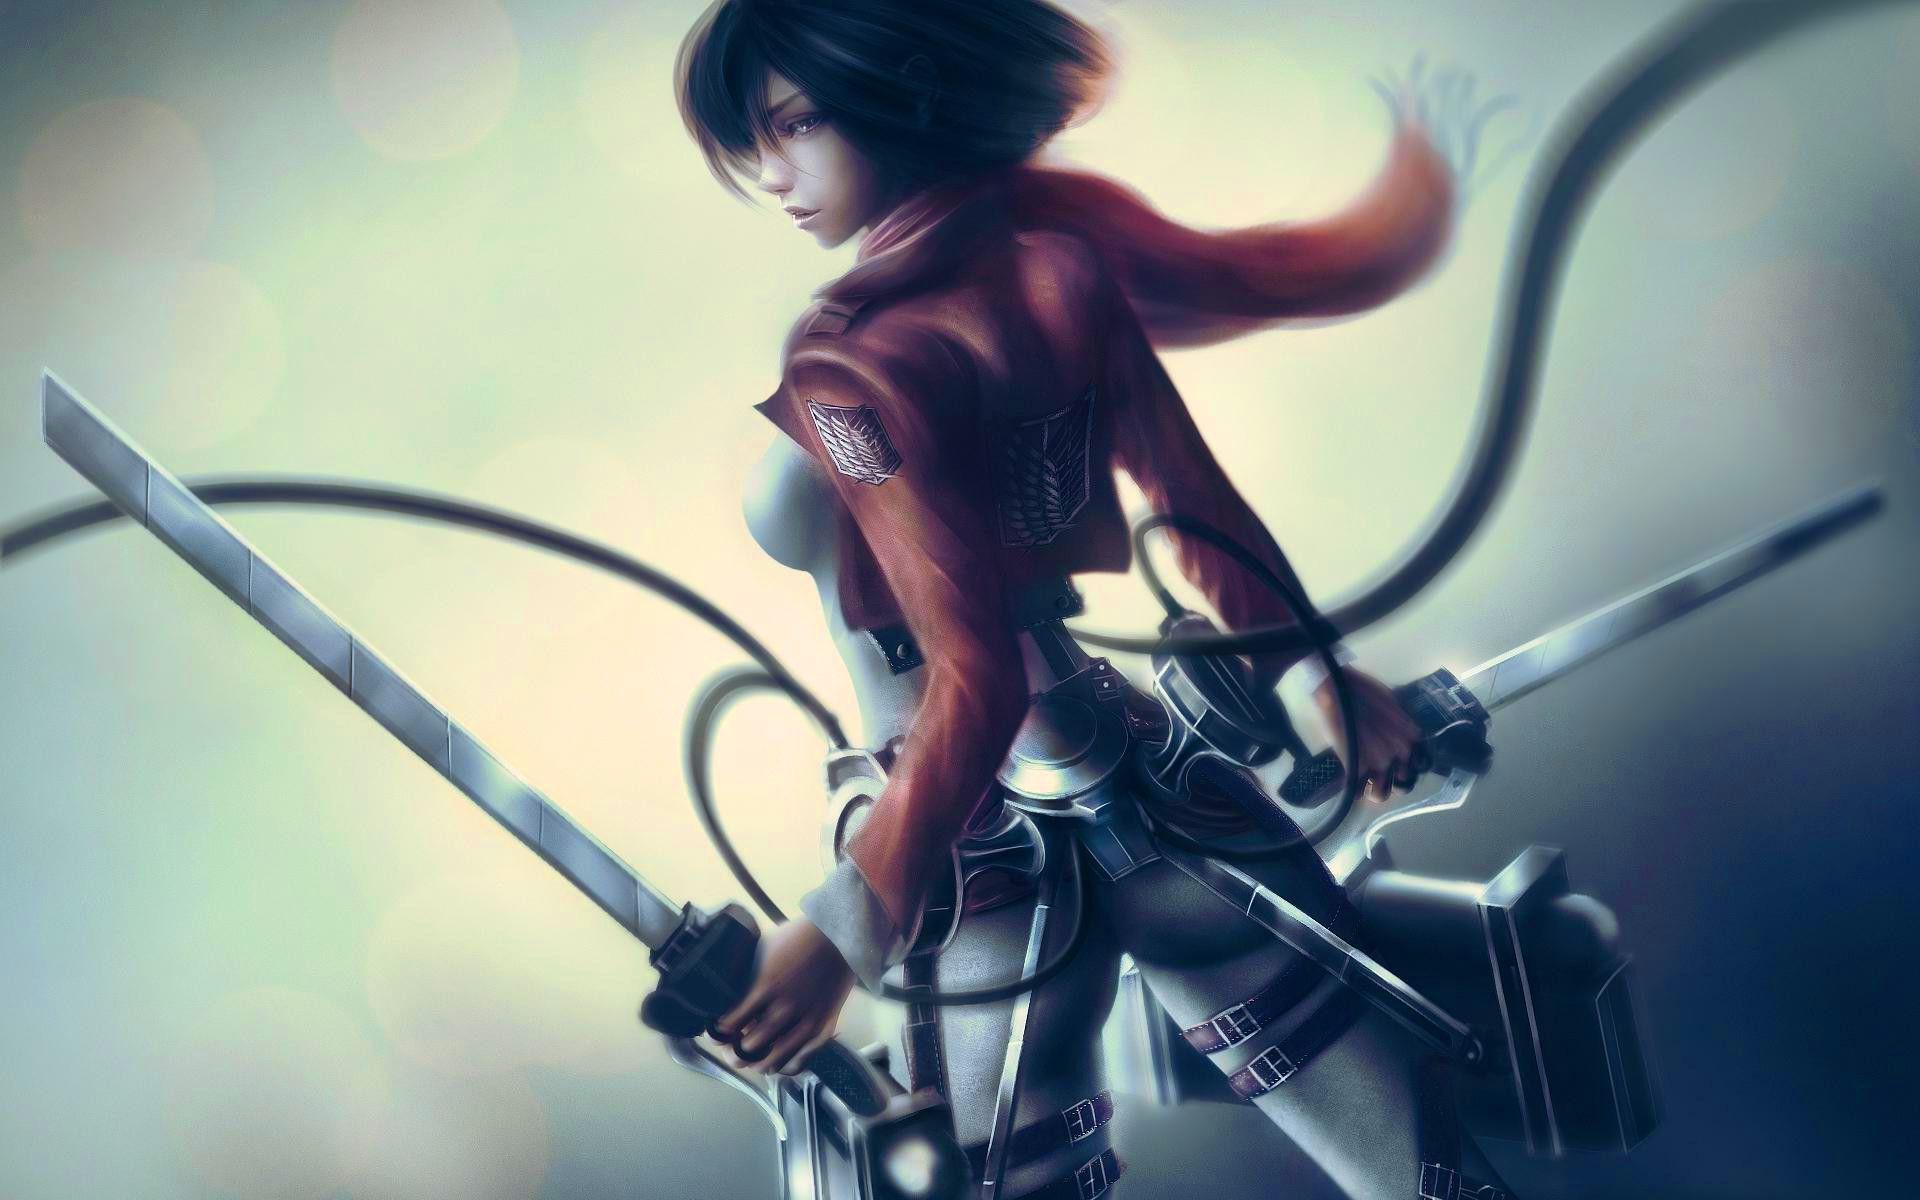 Mikasa ackerman